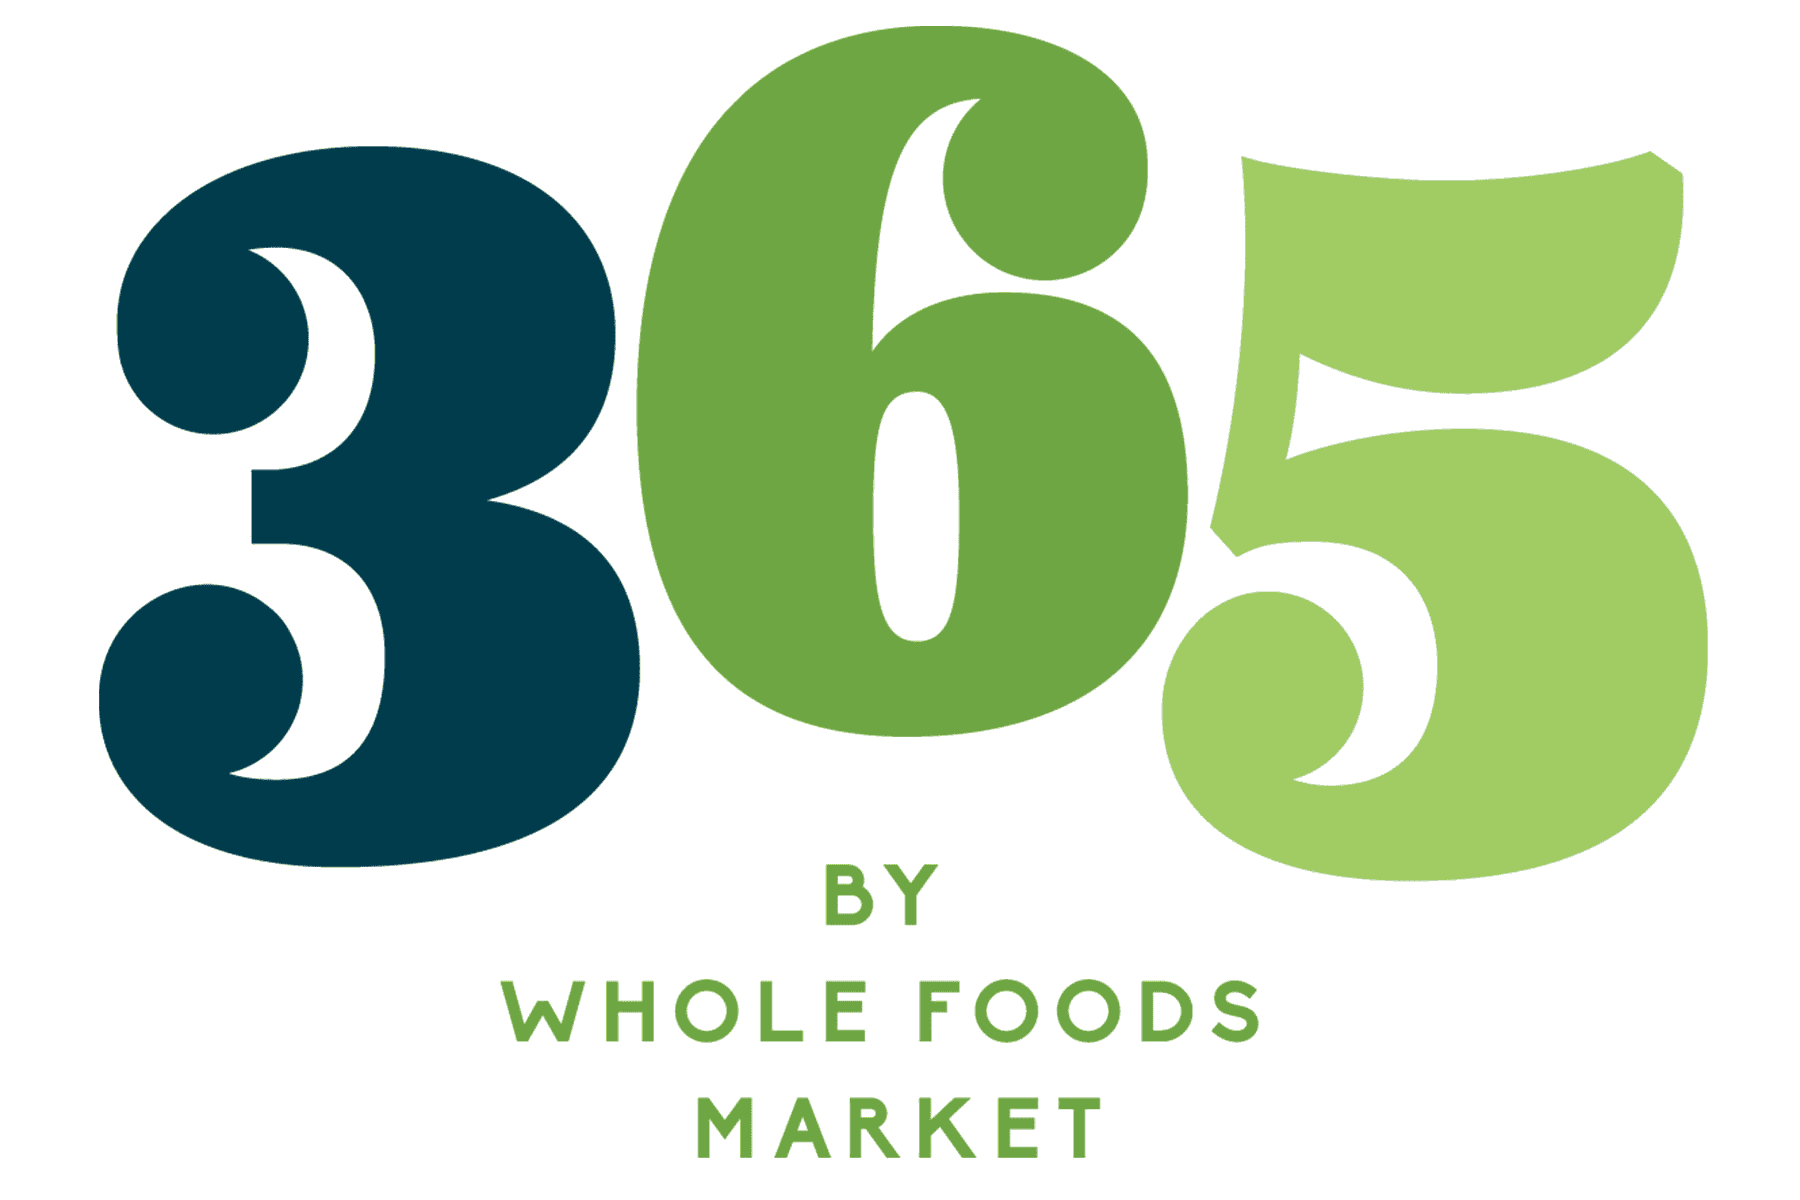 Whole Foods 365 logo